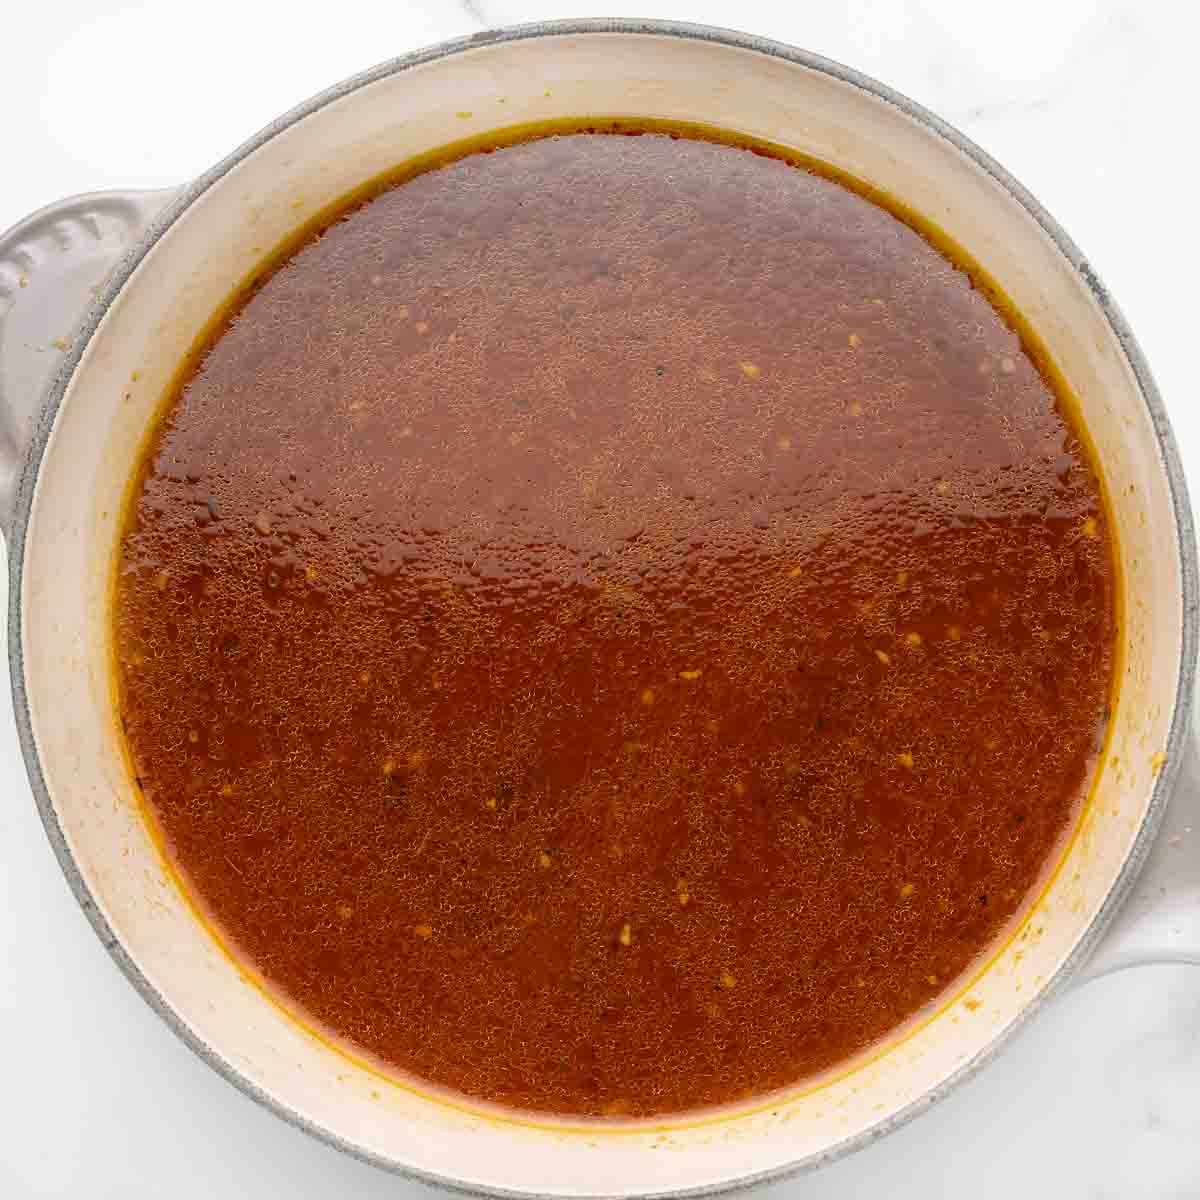 liquid from slow cooker in saucepan